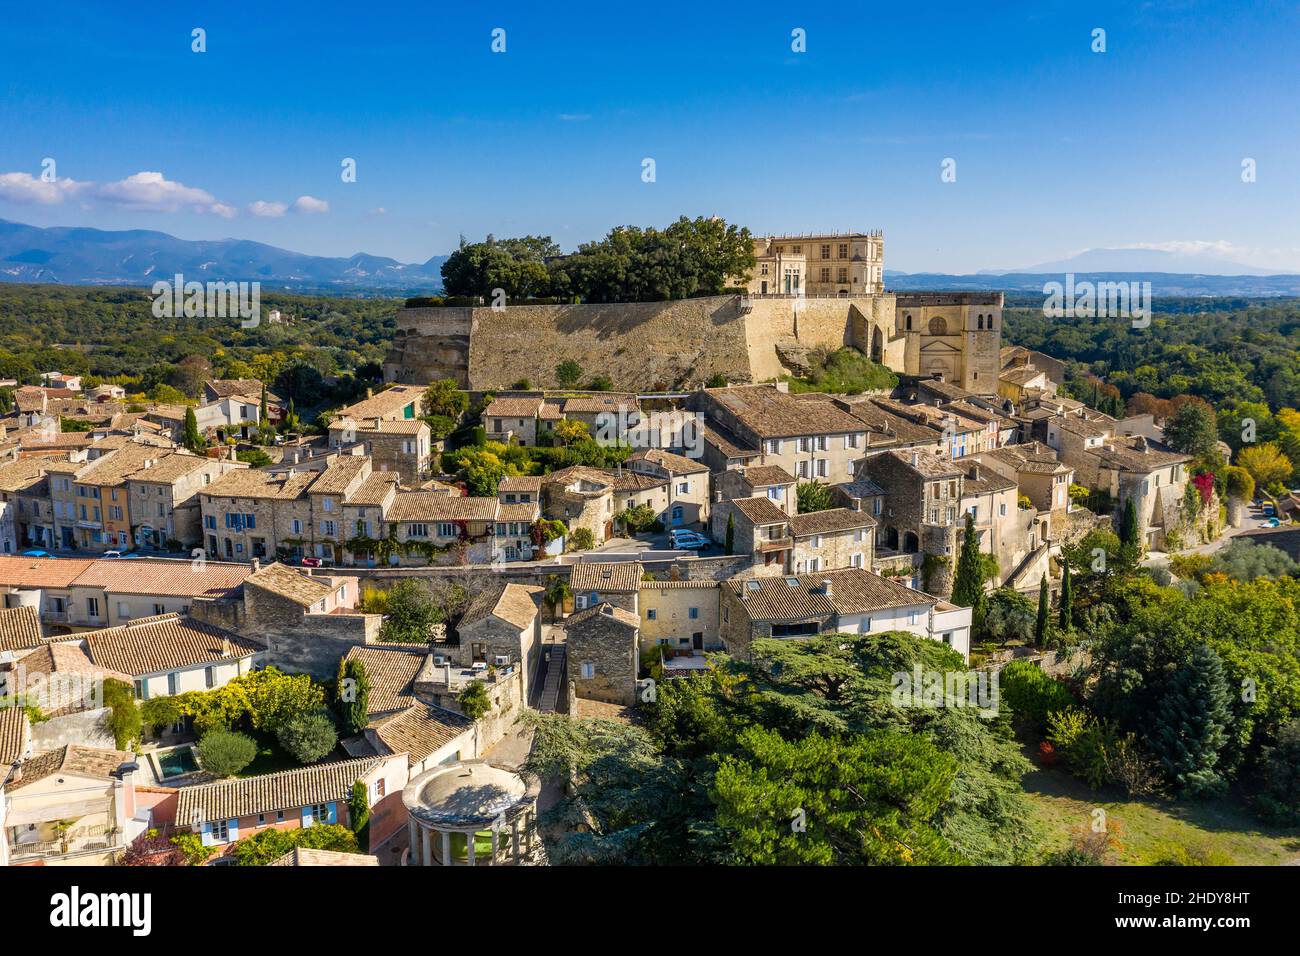 Francia, Drome, Grignan, etiquetados Les Plus Beaux Villages de France (los pueblos más bellos de Francia), el pueblo coronada por el castillo donde Foto de stock